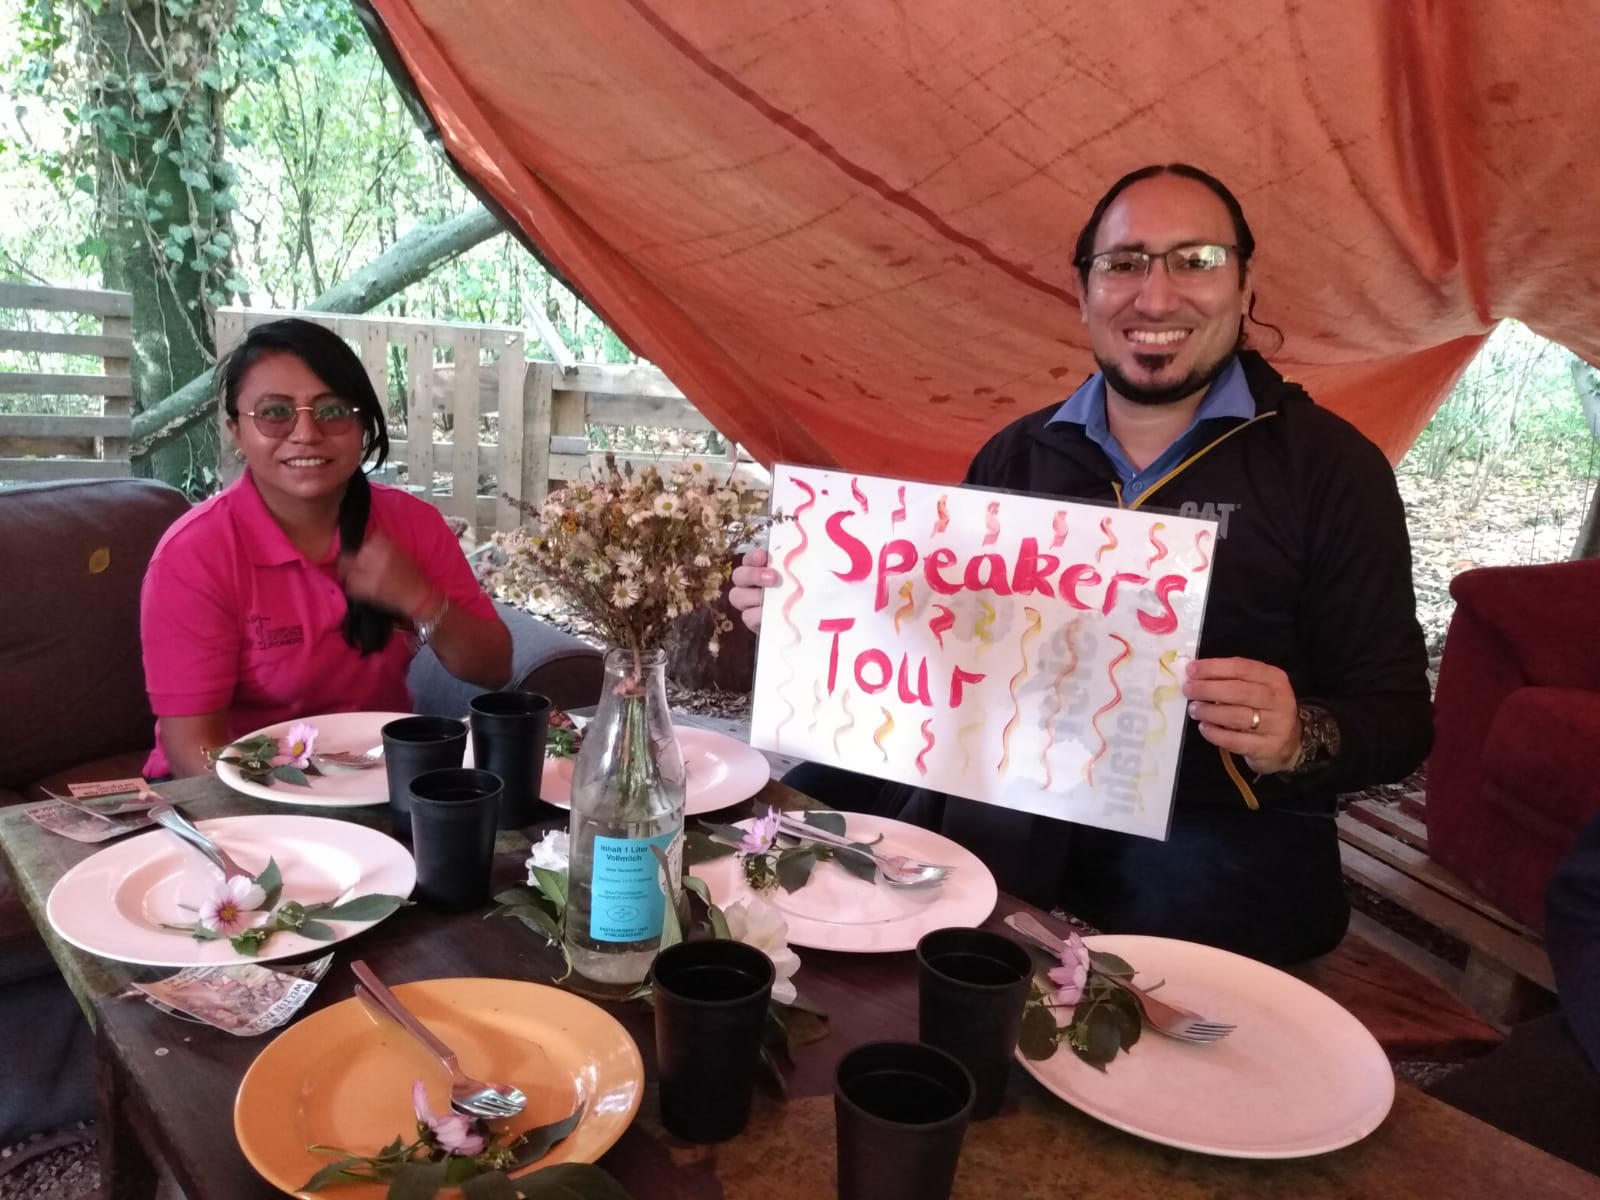 Luis González und Marlen Corea sitzen an einem gedeckten Esstisch und Luis González hält ein Schild mit den Worten "Speakers Tour". Beide lächeln,